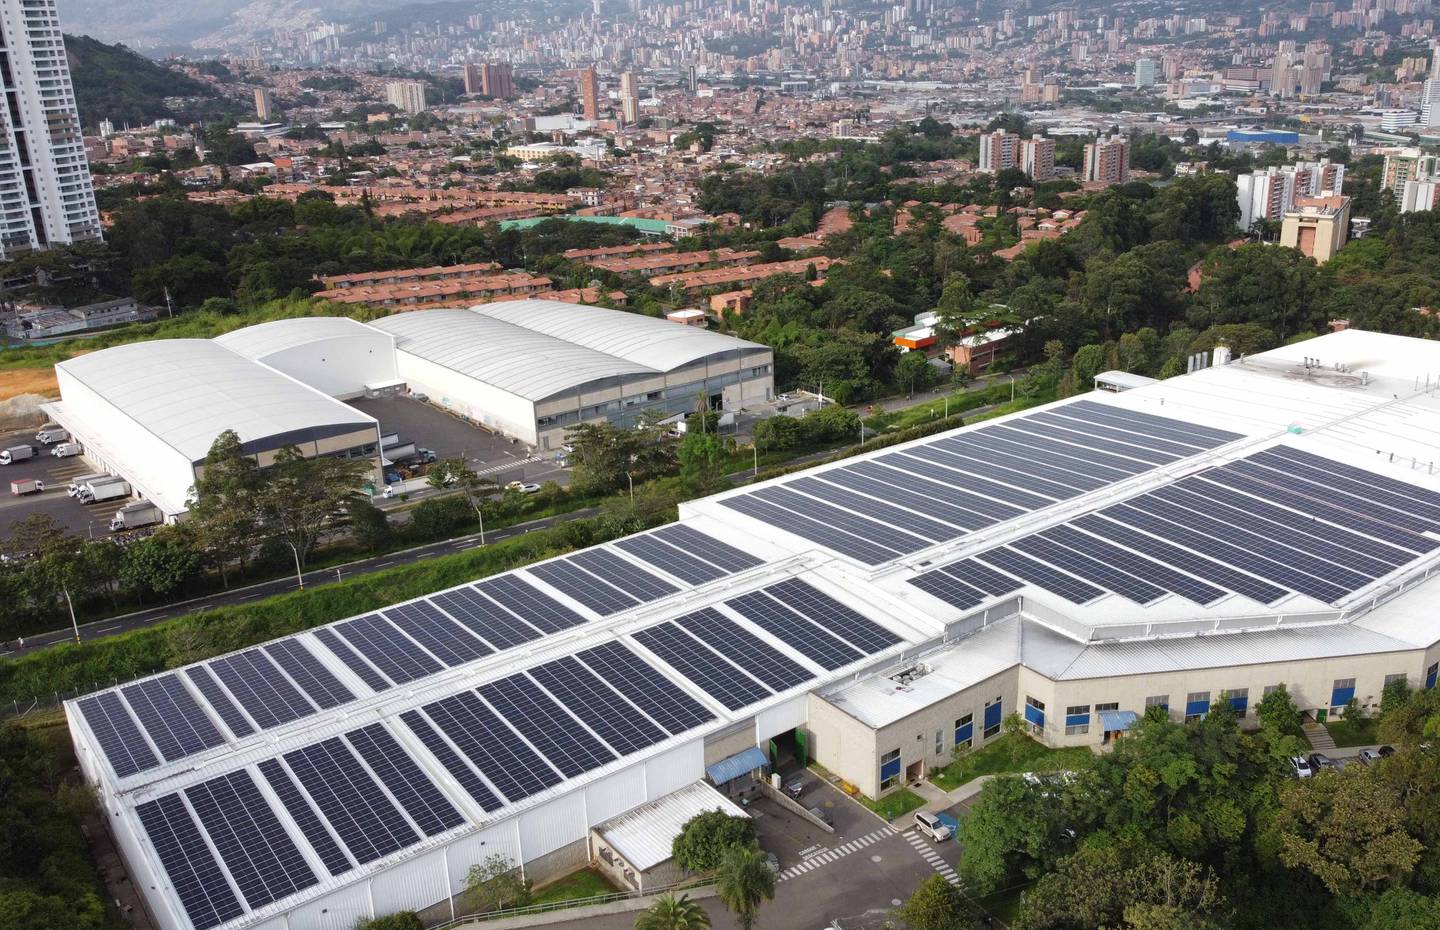 A rooftop solar array of Erco Energía